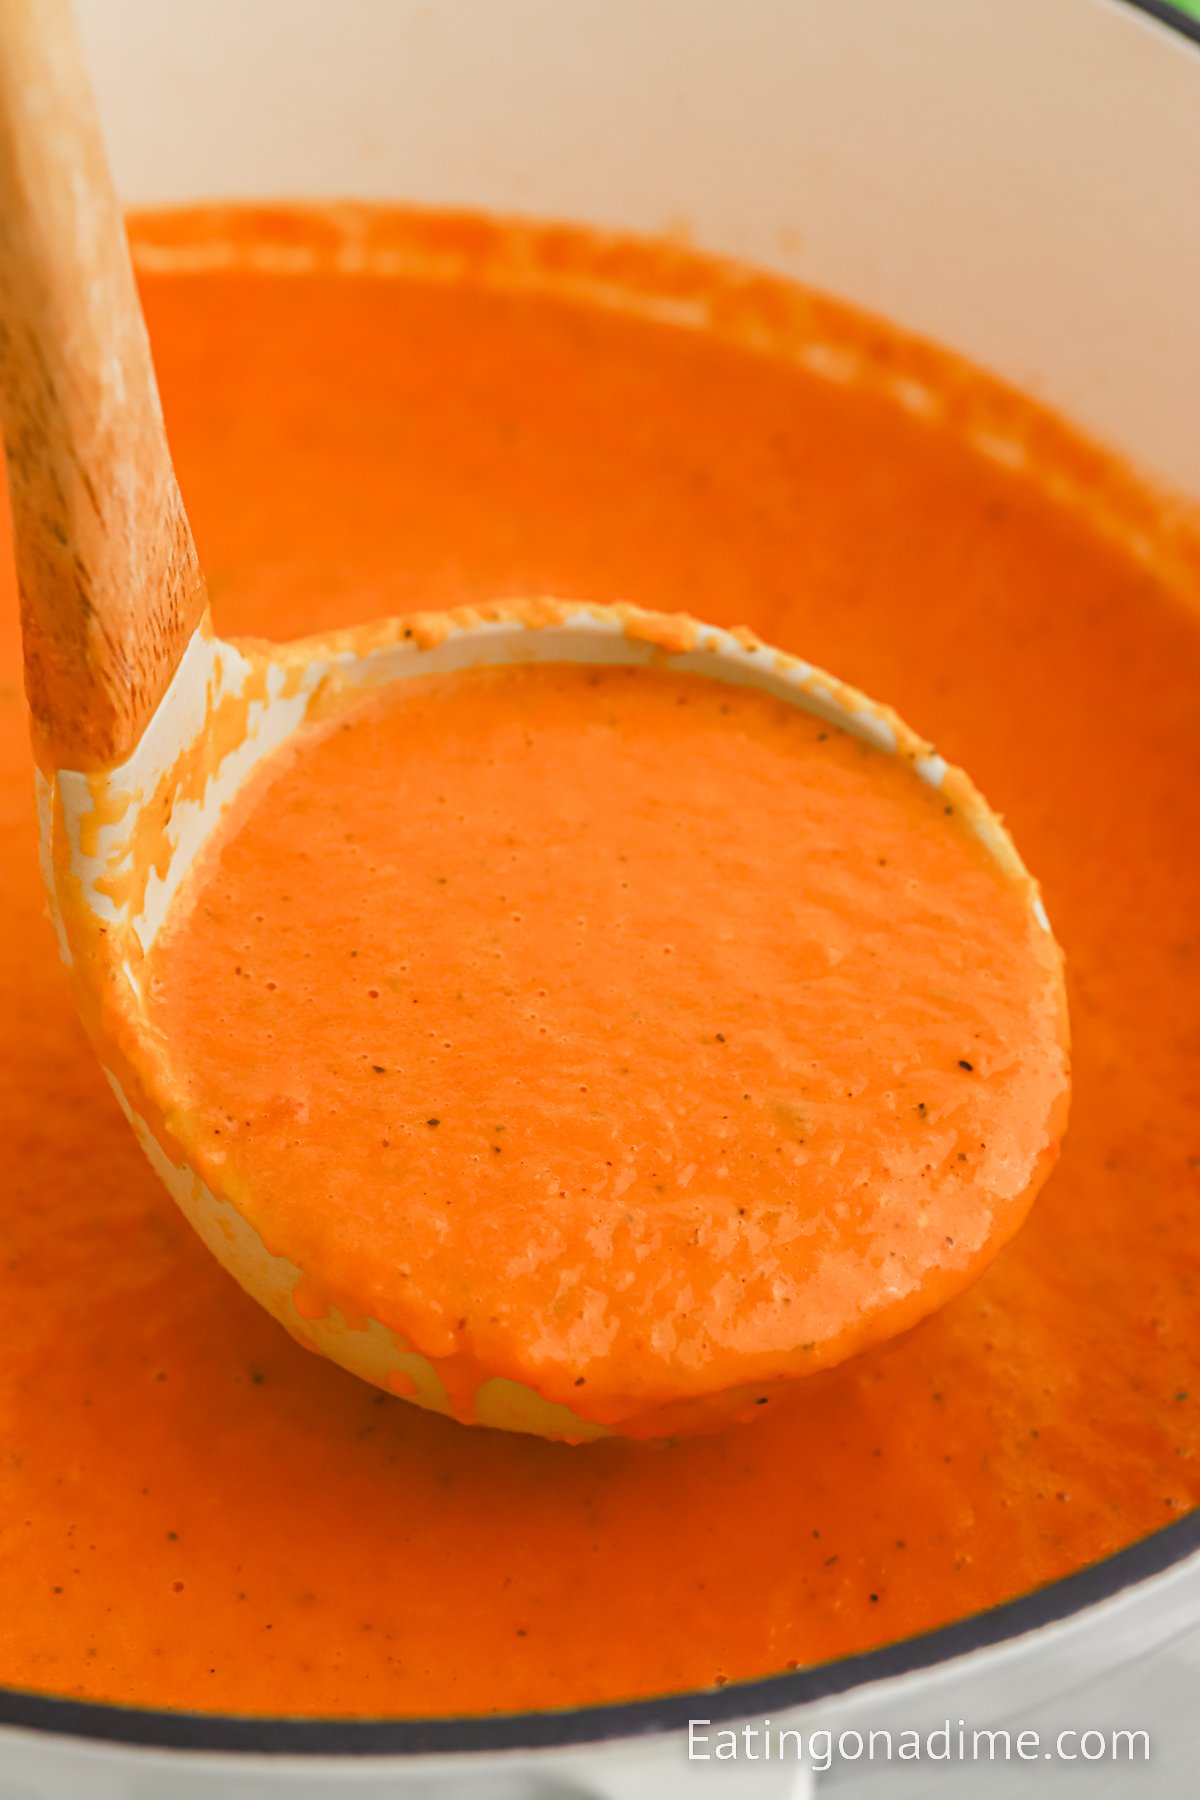 https://www.eatingonadime.com/wp-content/uploads/2022/12/1200x1800-Panera-Bread-Tomato-Soup-12.jpg